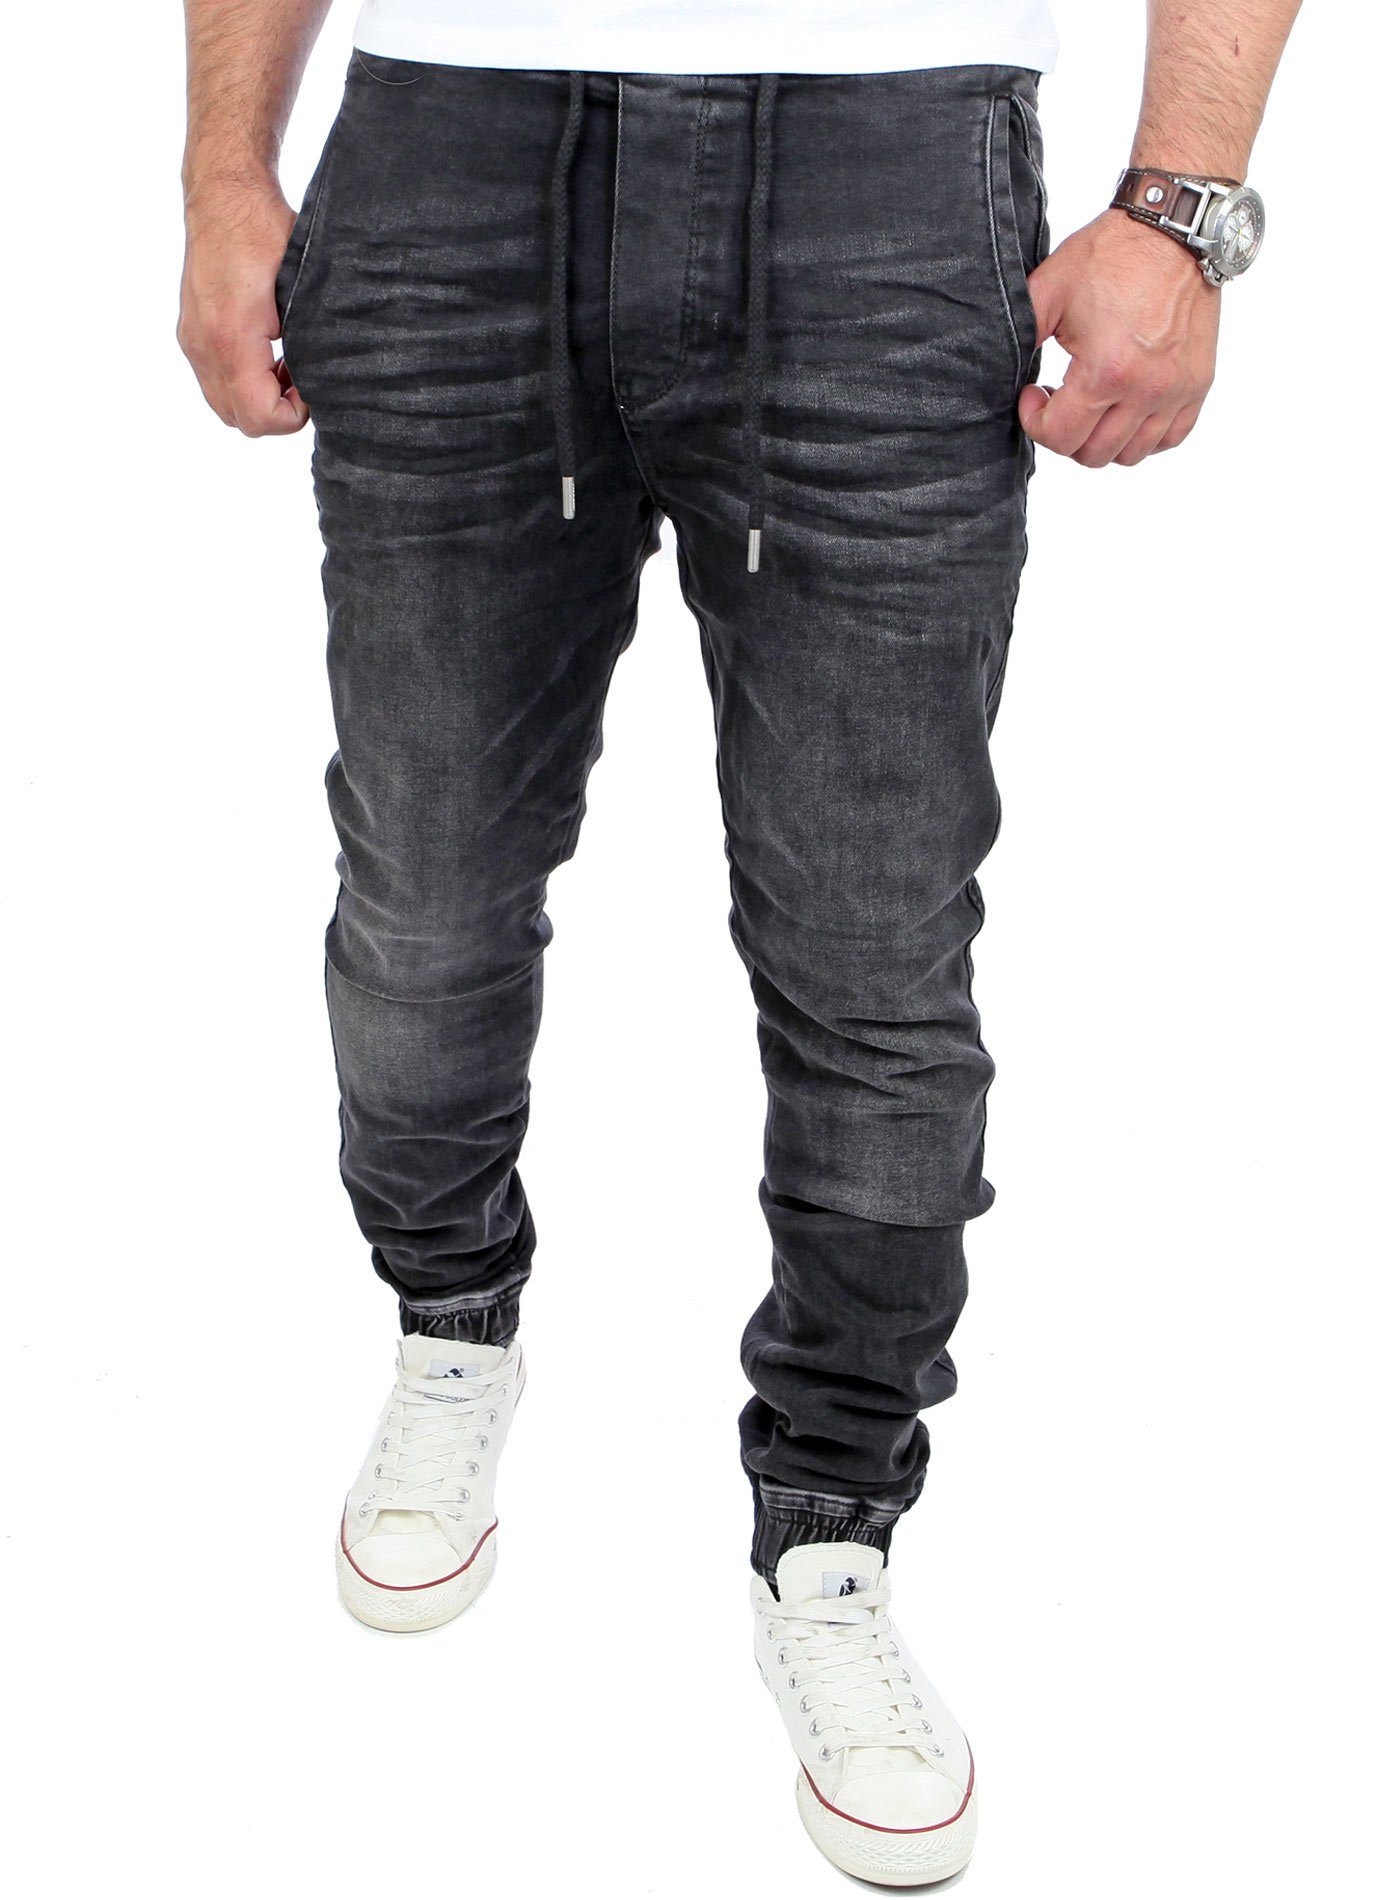 Reslad Stretch-Jeans Reslad Casual Style Jeans-Herren Slim Fit Jogging-Hose RS-2071 Stretch Jogging-Denim Slim Fit schwarz